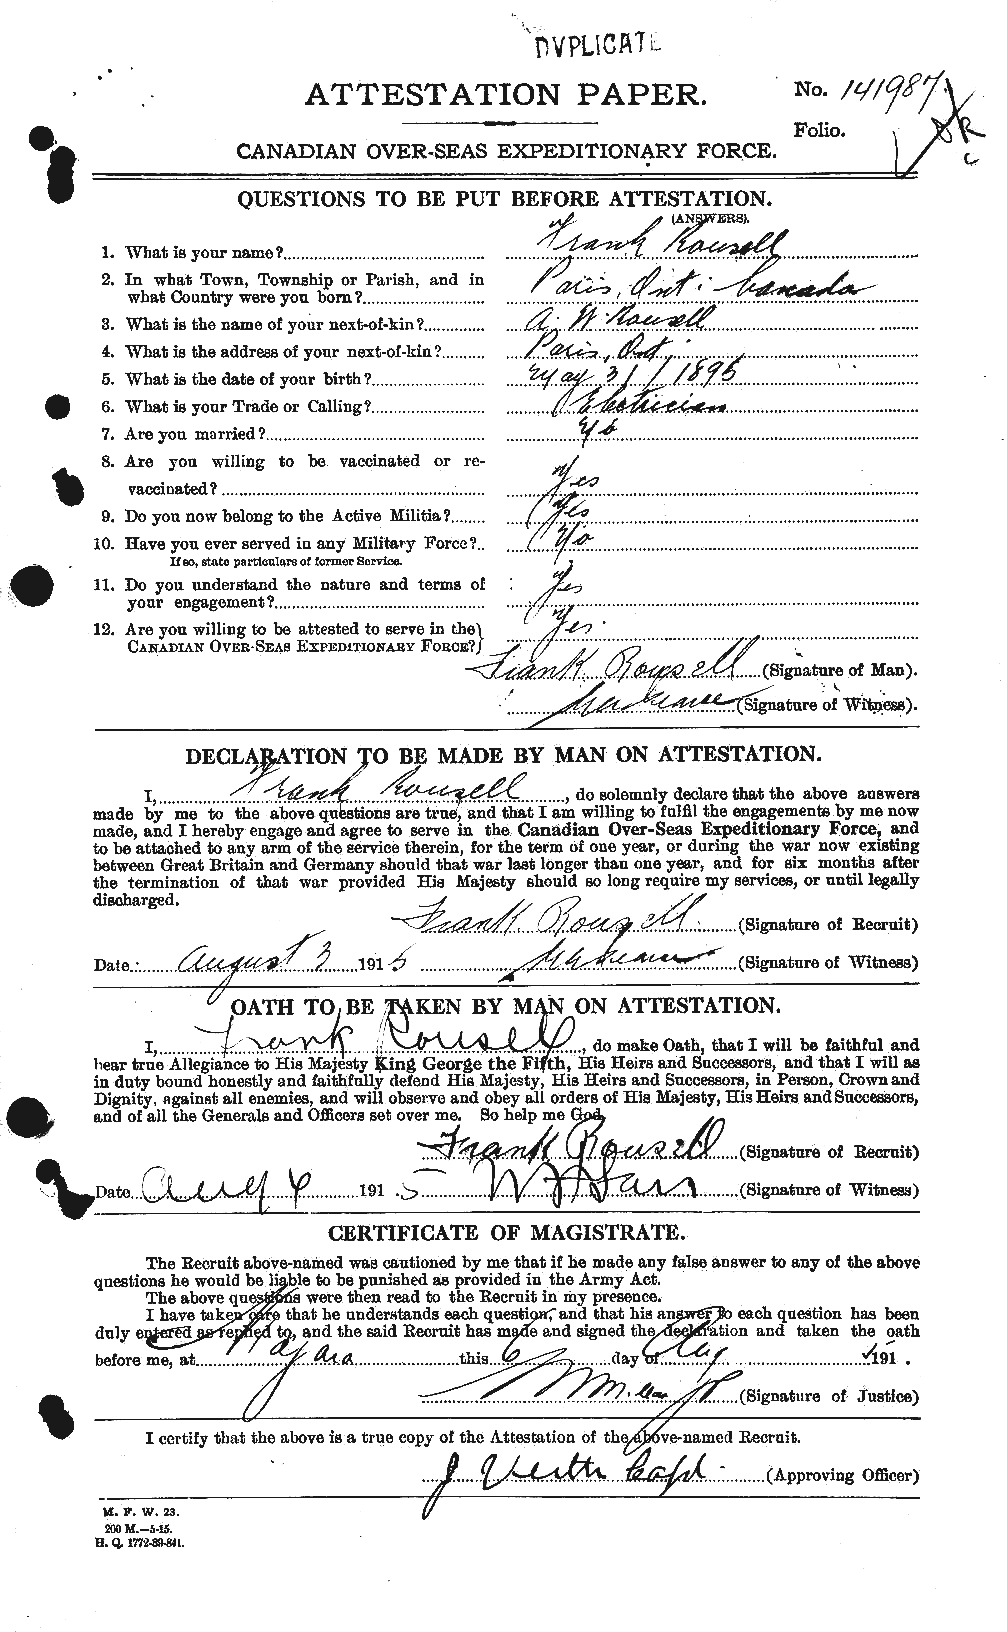 Dossiers du Personnel de la Première Guerre mondiale - CEC 617606a